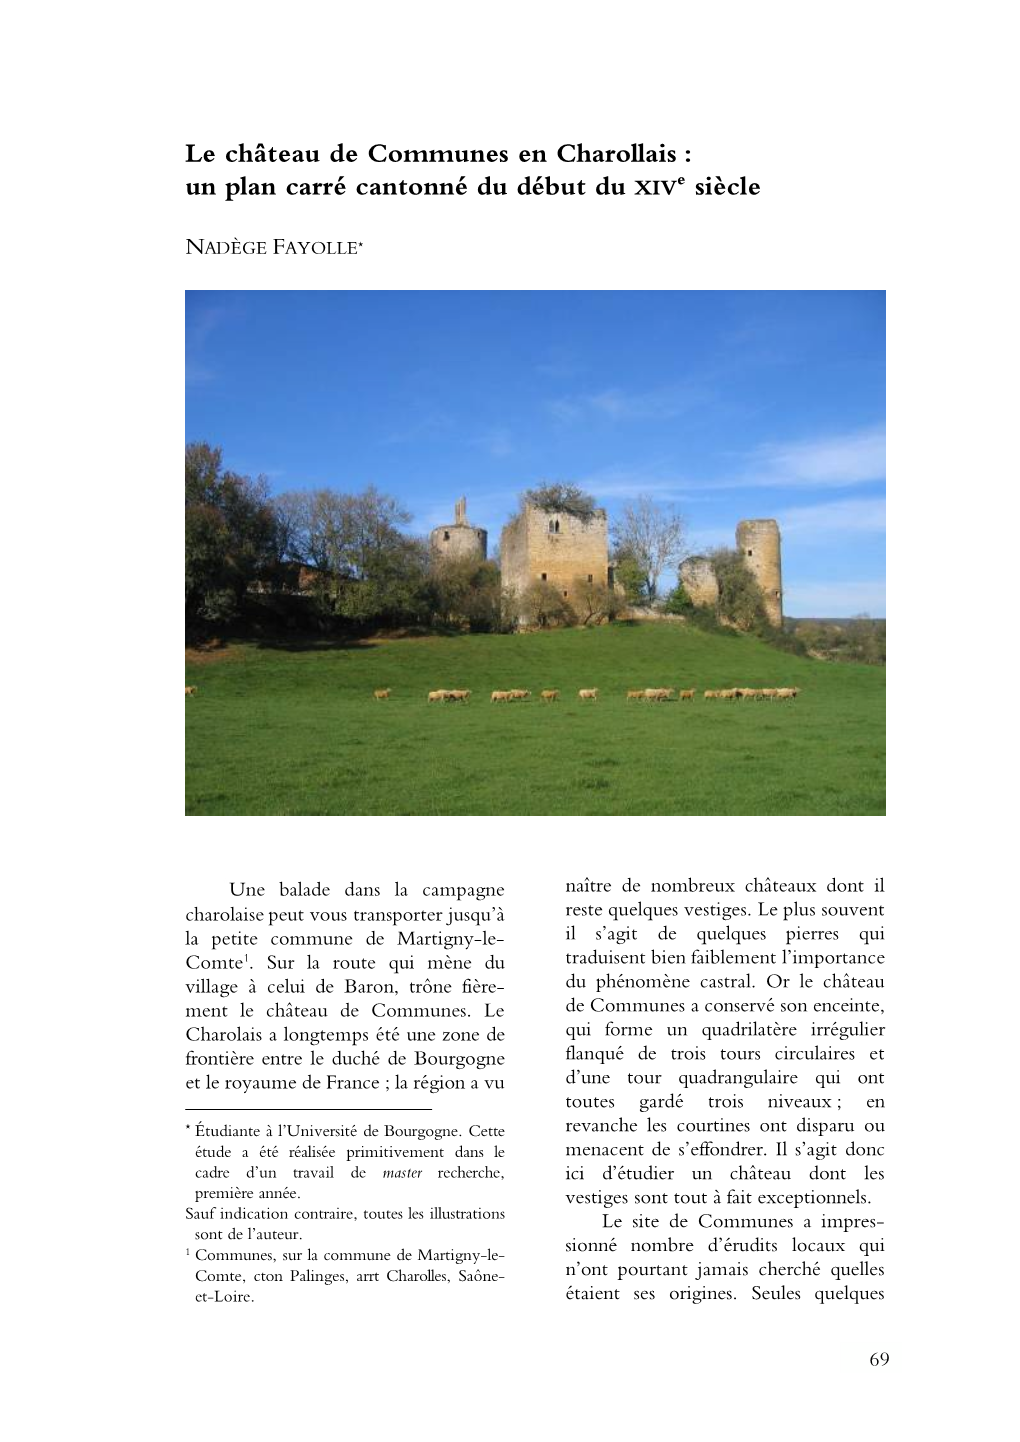 Le Château De Communes En Charollais : Un Plan Carré Cantonné Du Début Du Xive Siècle